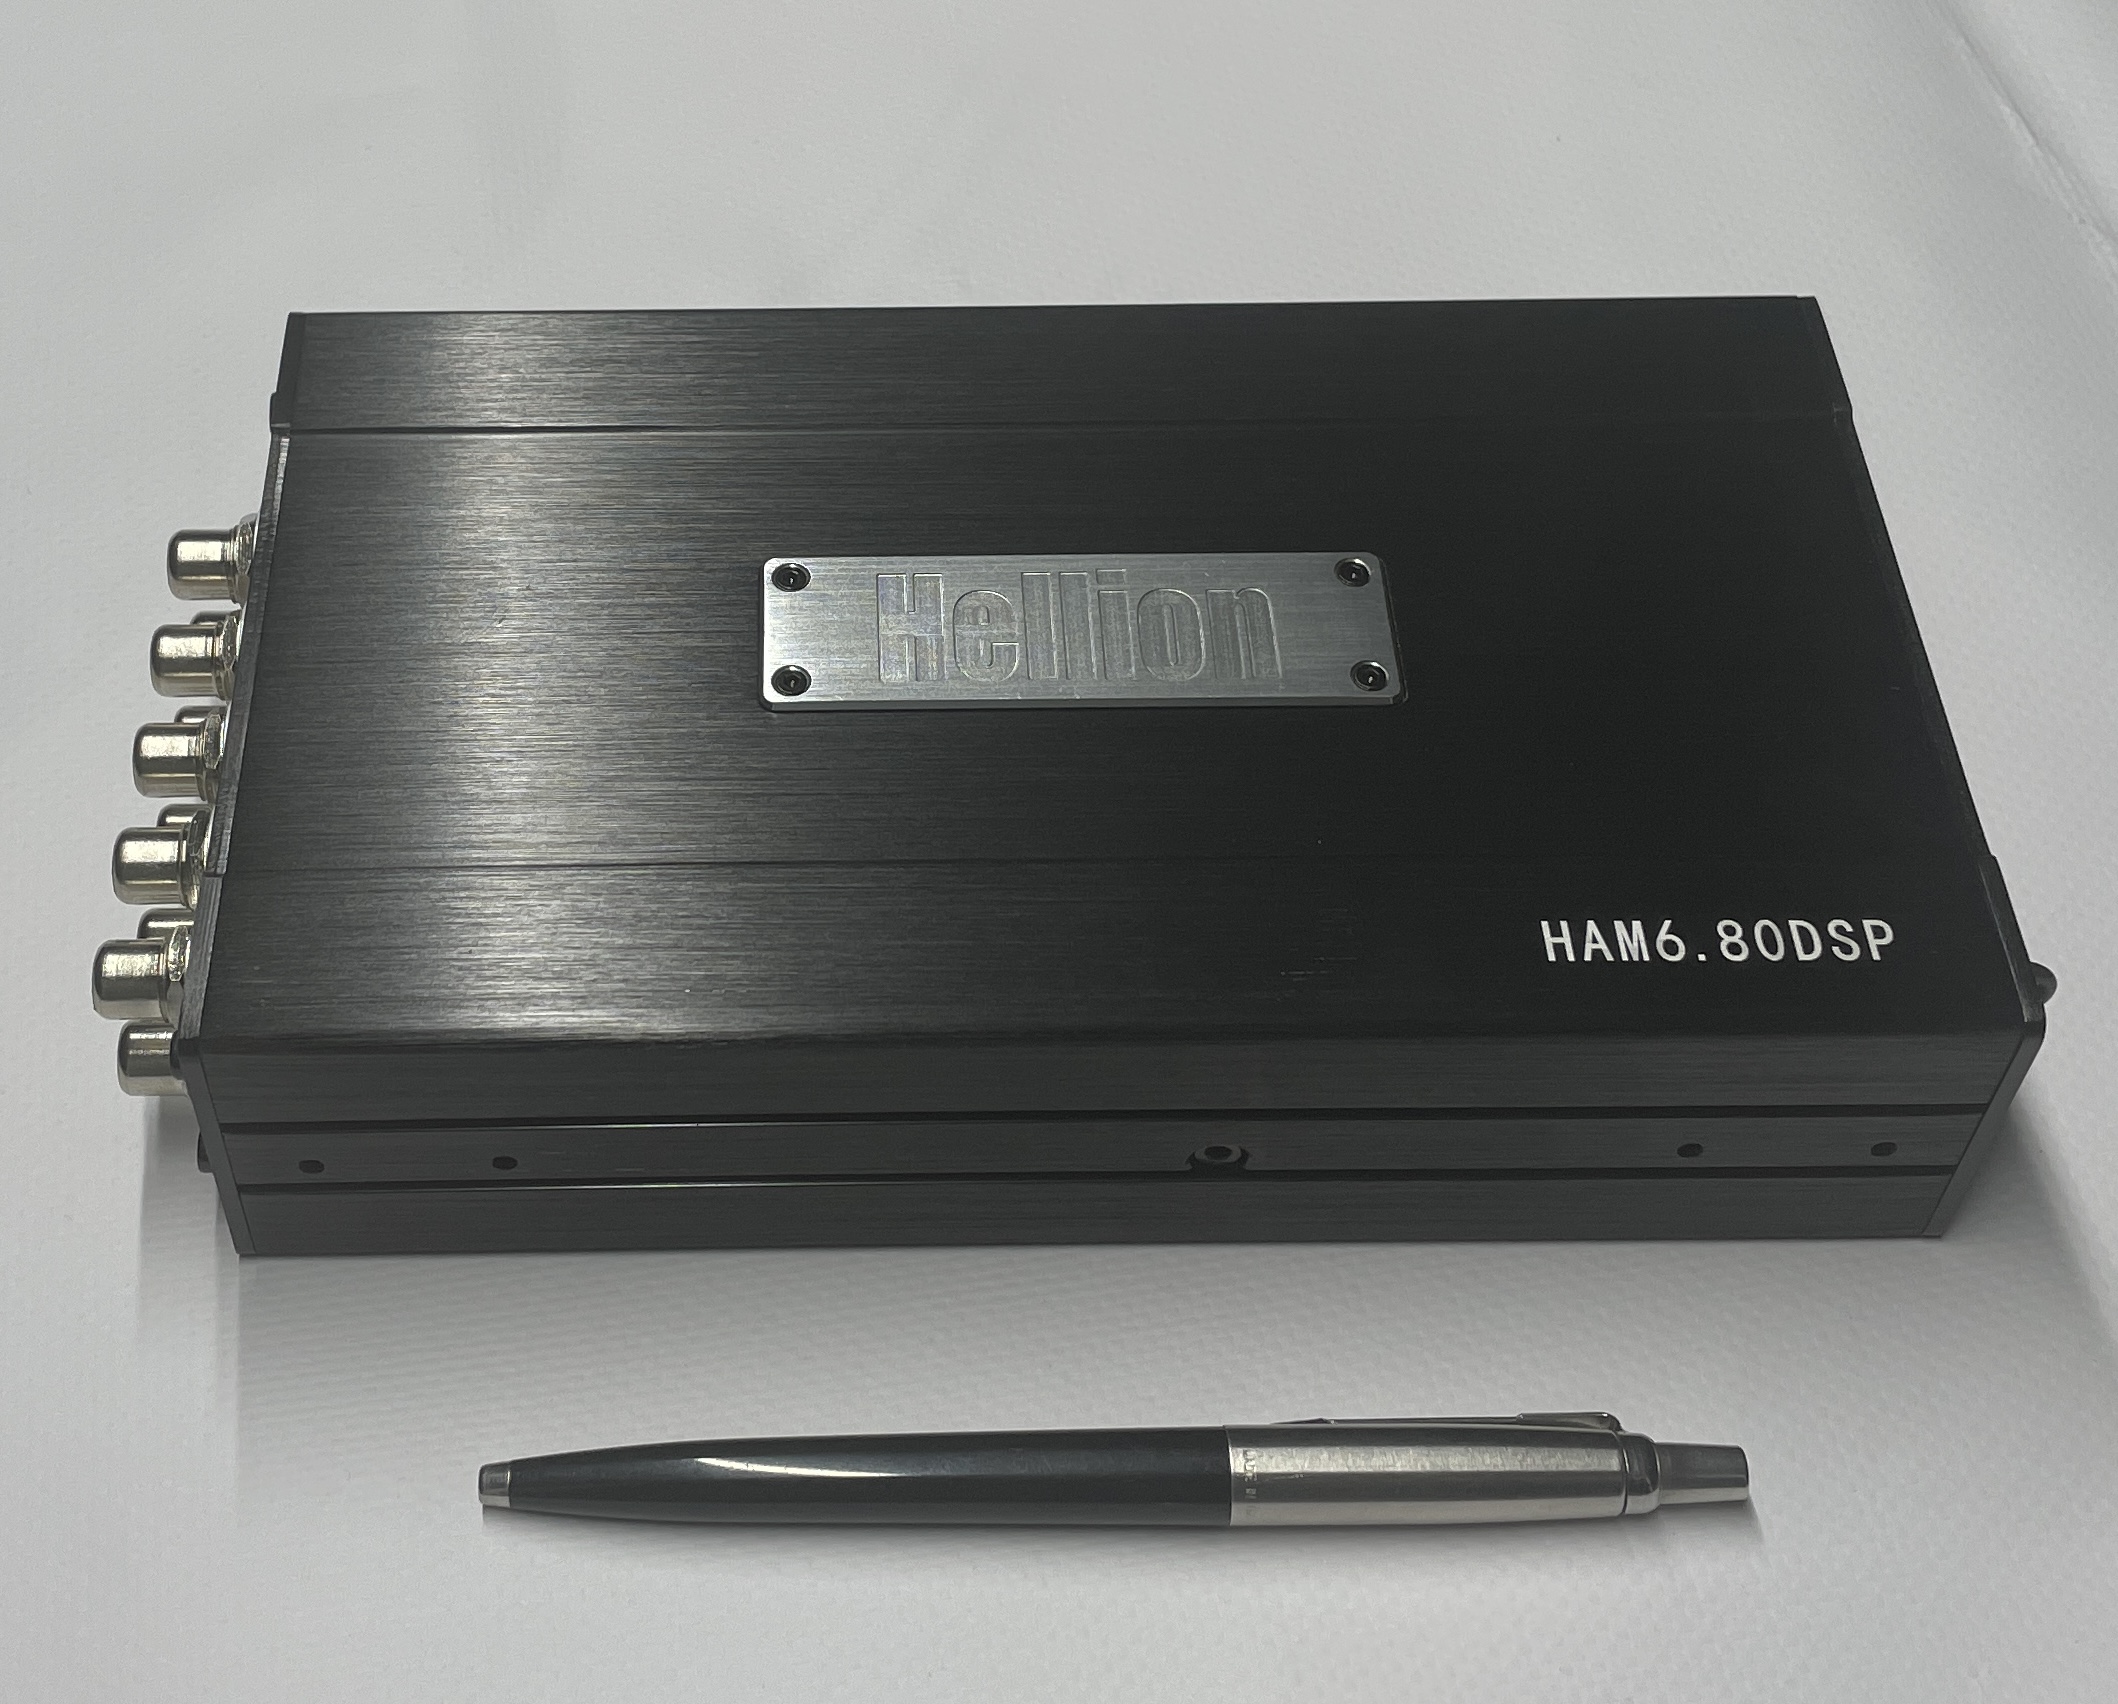 Взрывная аудиоинновация: Hellion HAM 6.80DSP - Новый усилитель звука с мощным DSP-процессором! 